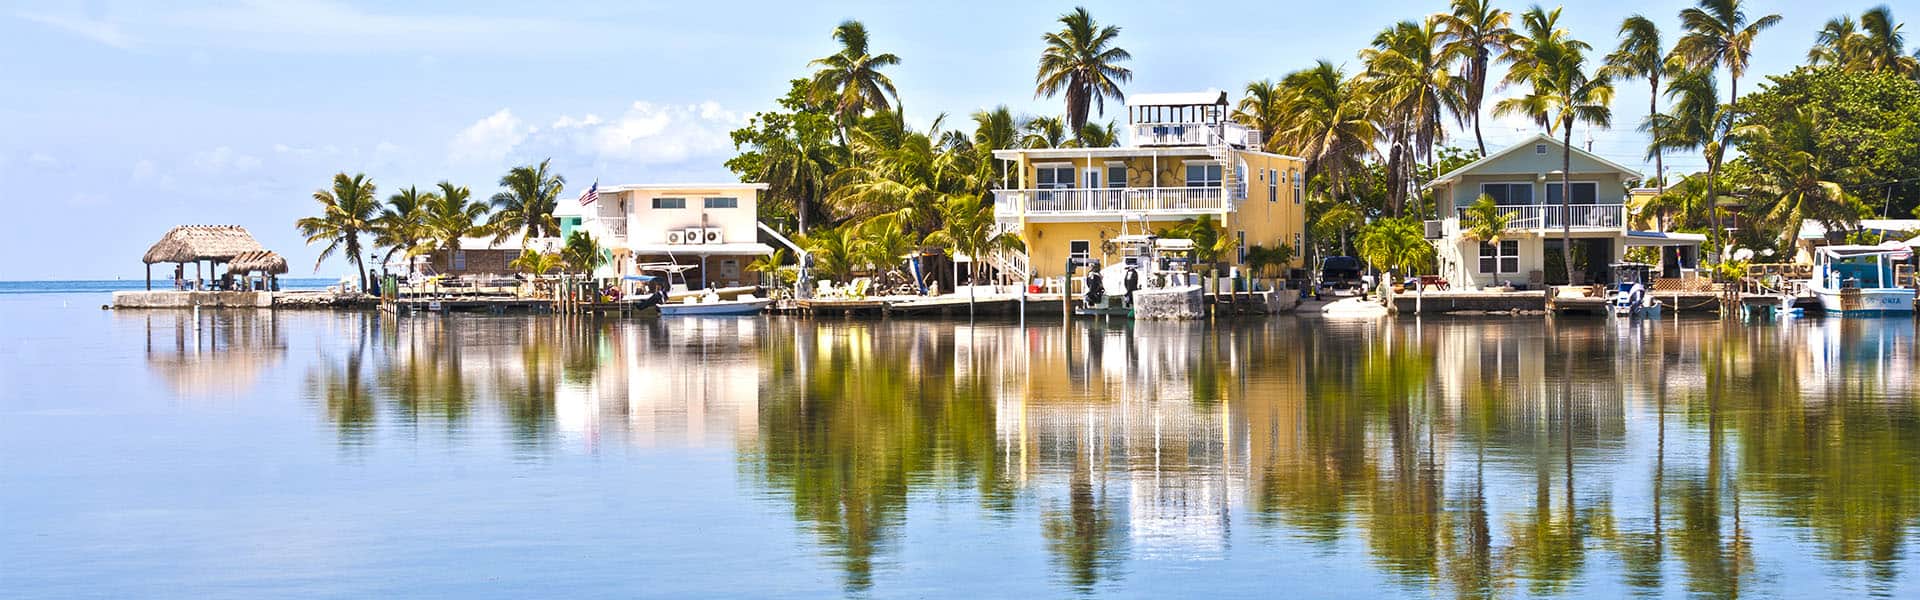 Bahamas: Great Stirrup Cay, Key West & Bimini